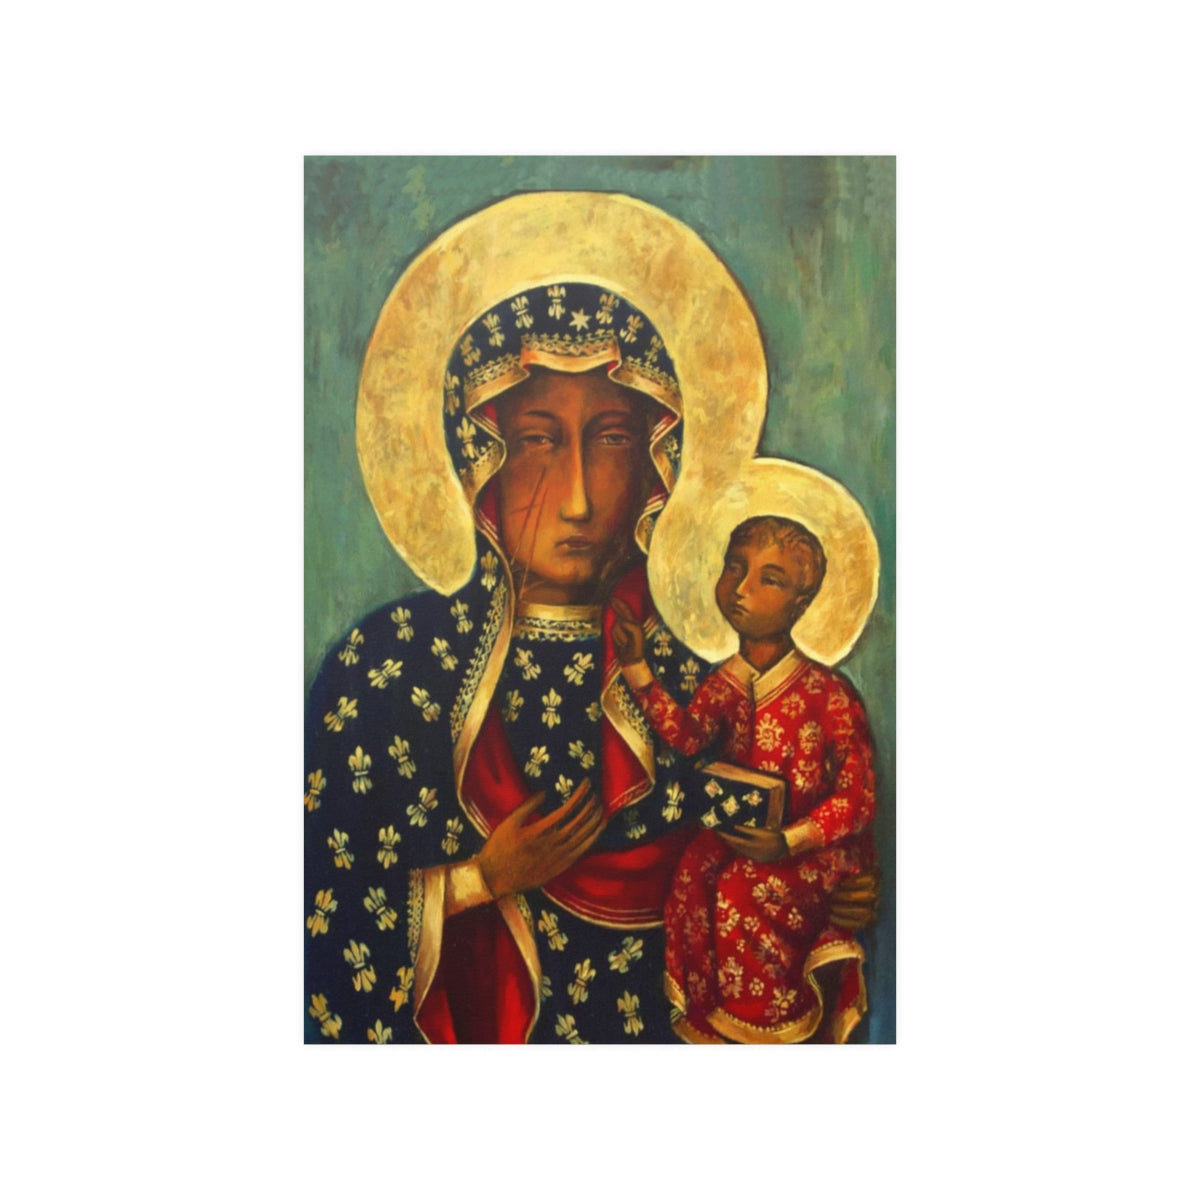 Our Lady Of Czestochowa Black Madonna By Jasna Gora Shrine Print Poster